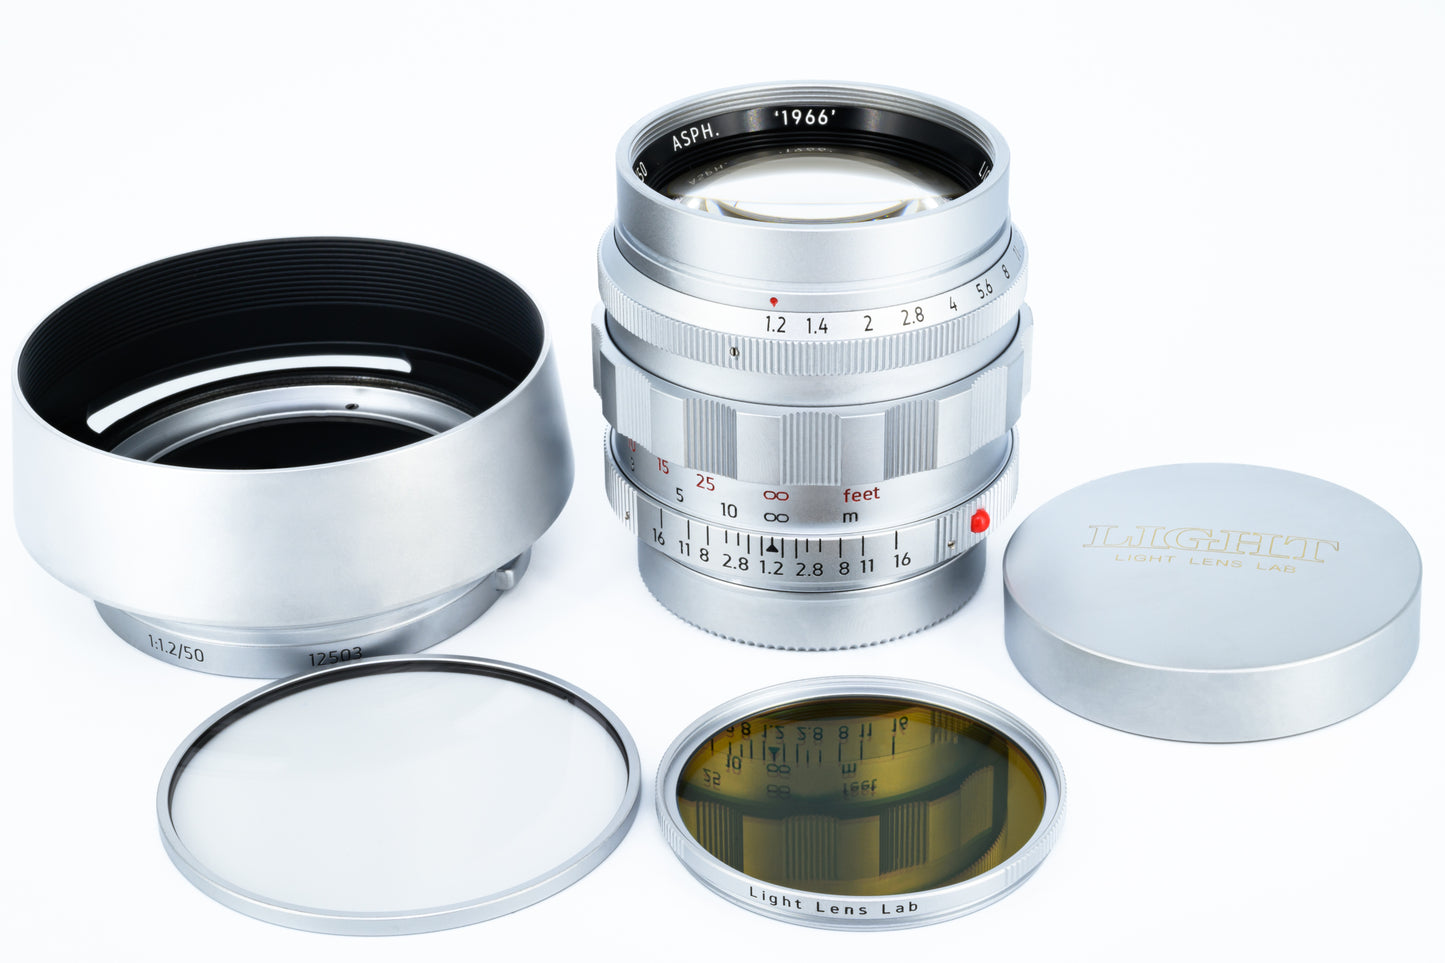 Light Lens Lab, Leica Lenses, Camera Lenses. 